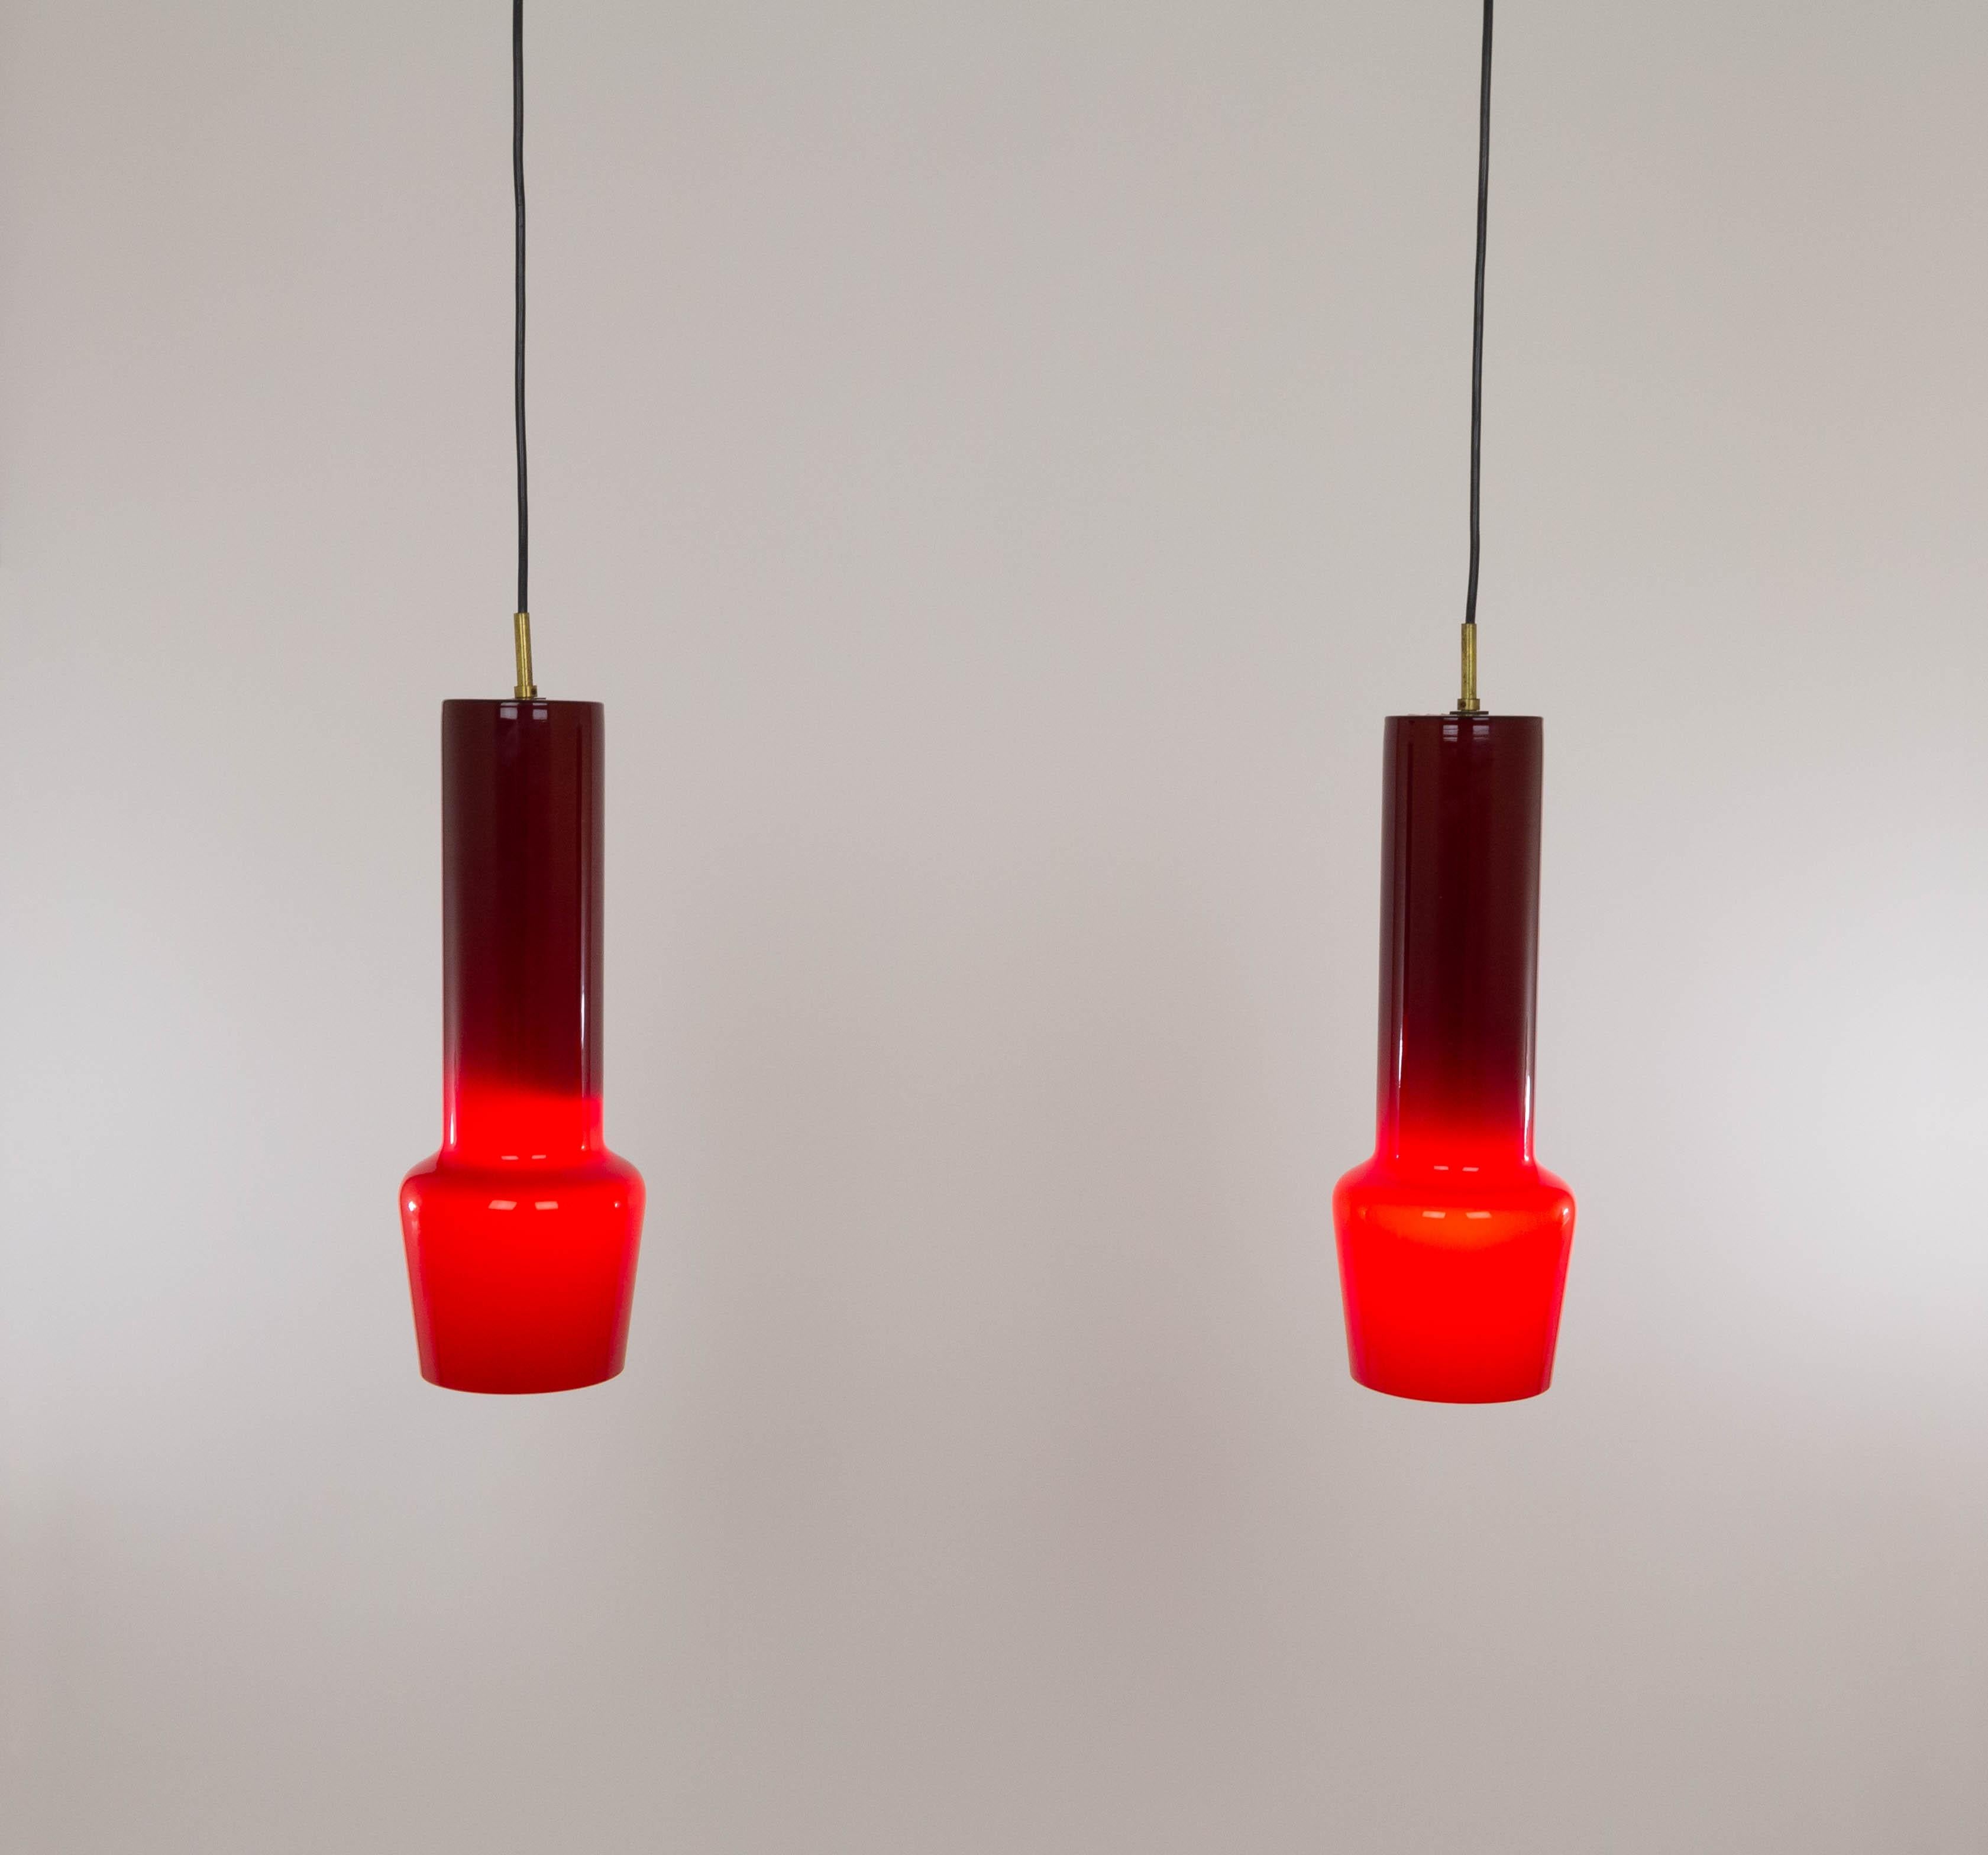 Paire de pendentifs en verre rouge n° 011.11 soufflé à la bouche, conçus par Massimo Vignelli au début de son impressionnante carrière de designer et exécutés par le spécialiste du verre de Murano, Venini. L'une des lampes les plus caractéristiques